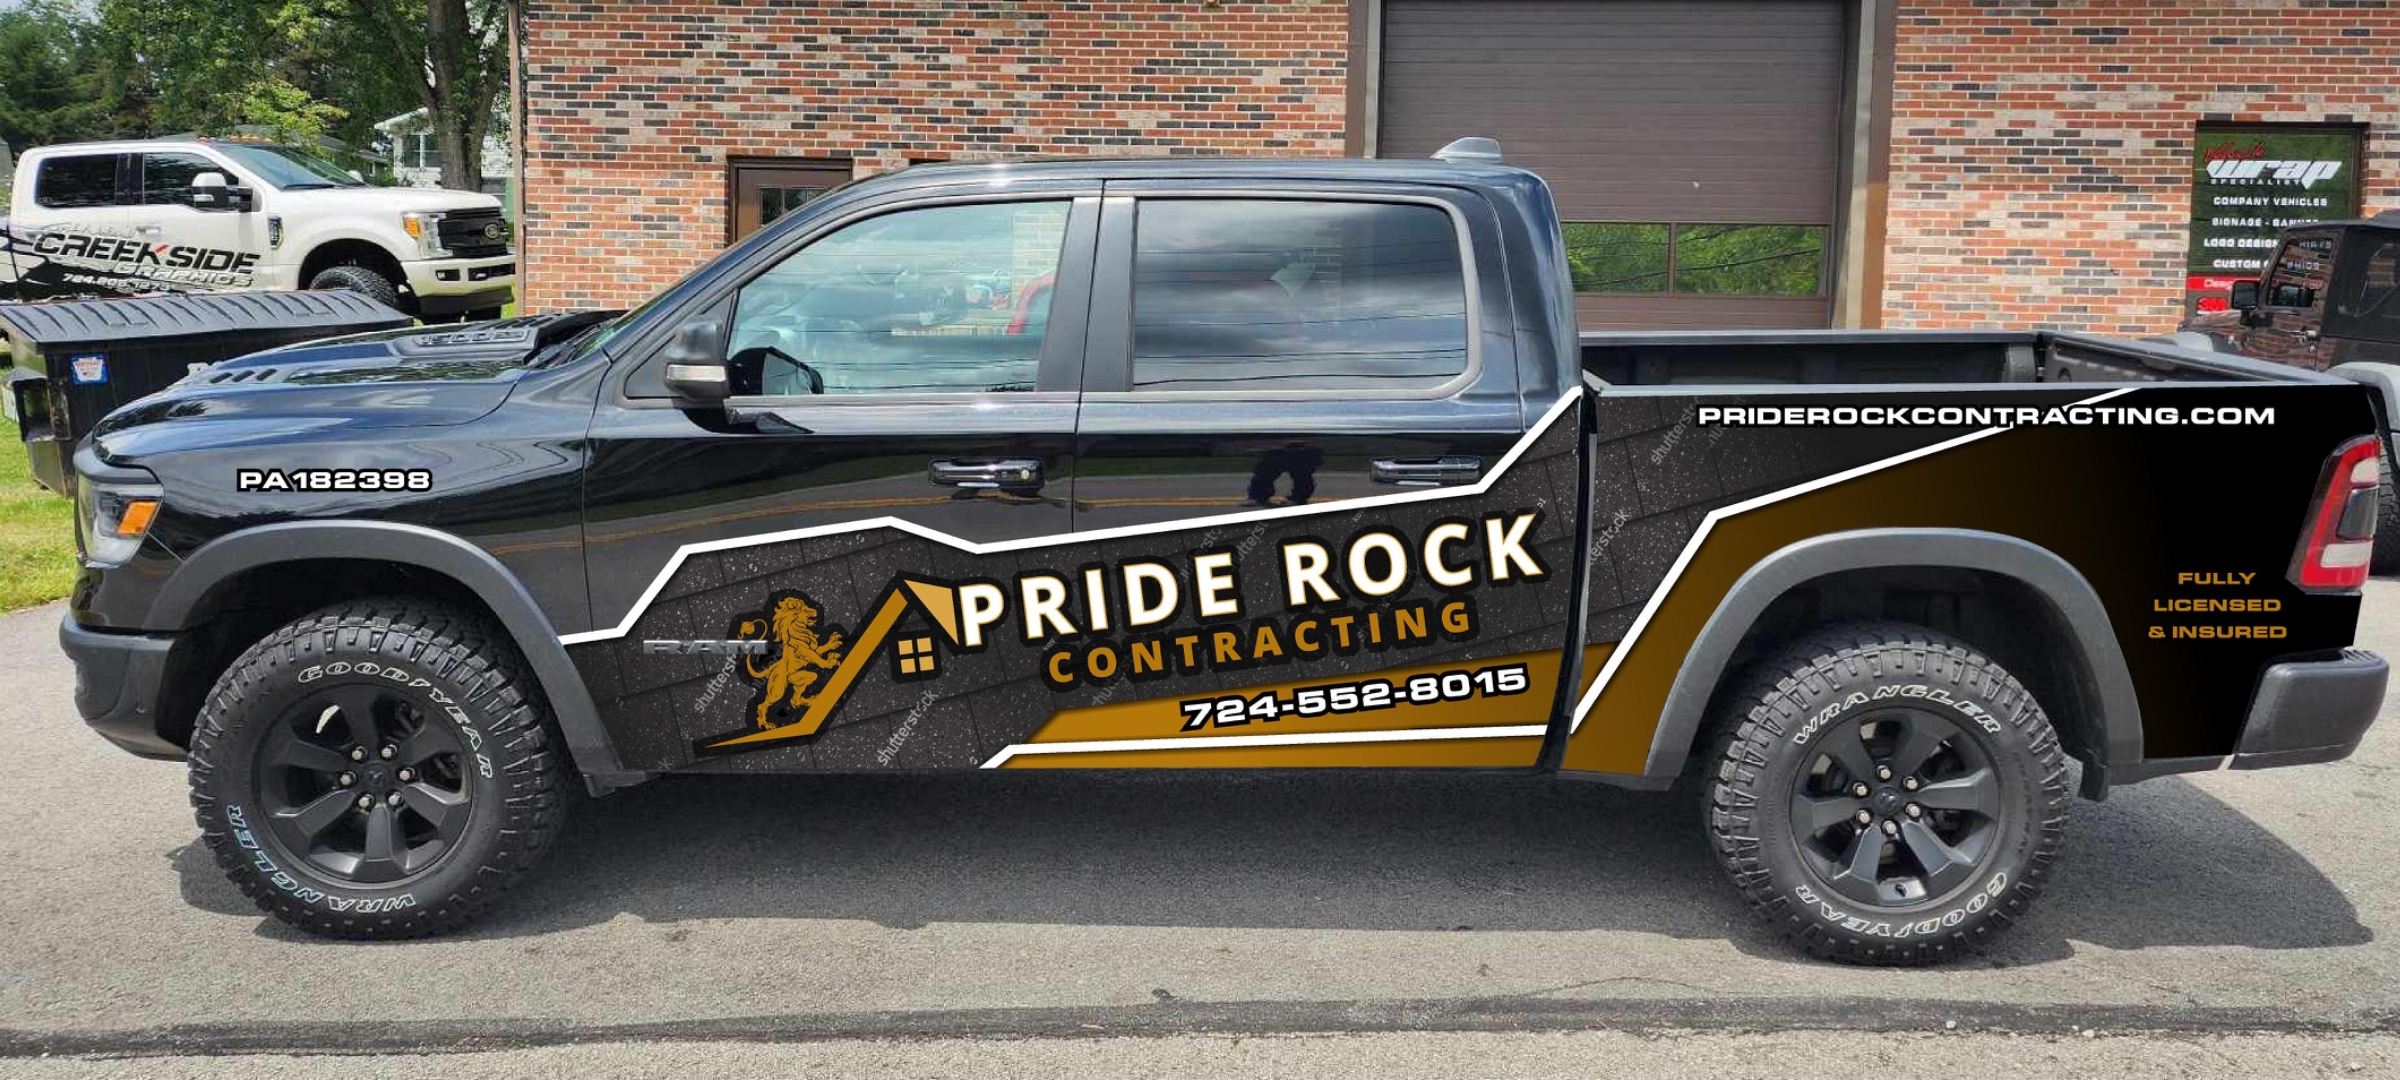 Pride Rock Contracting Logo